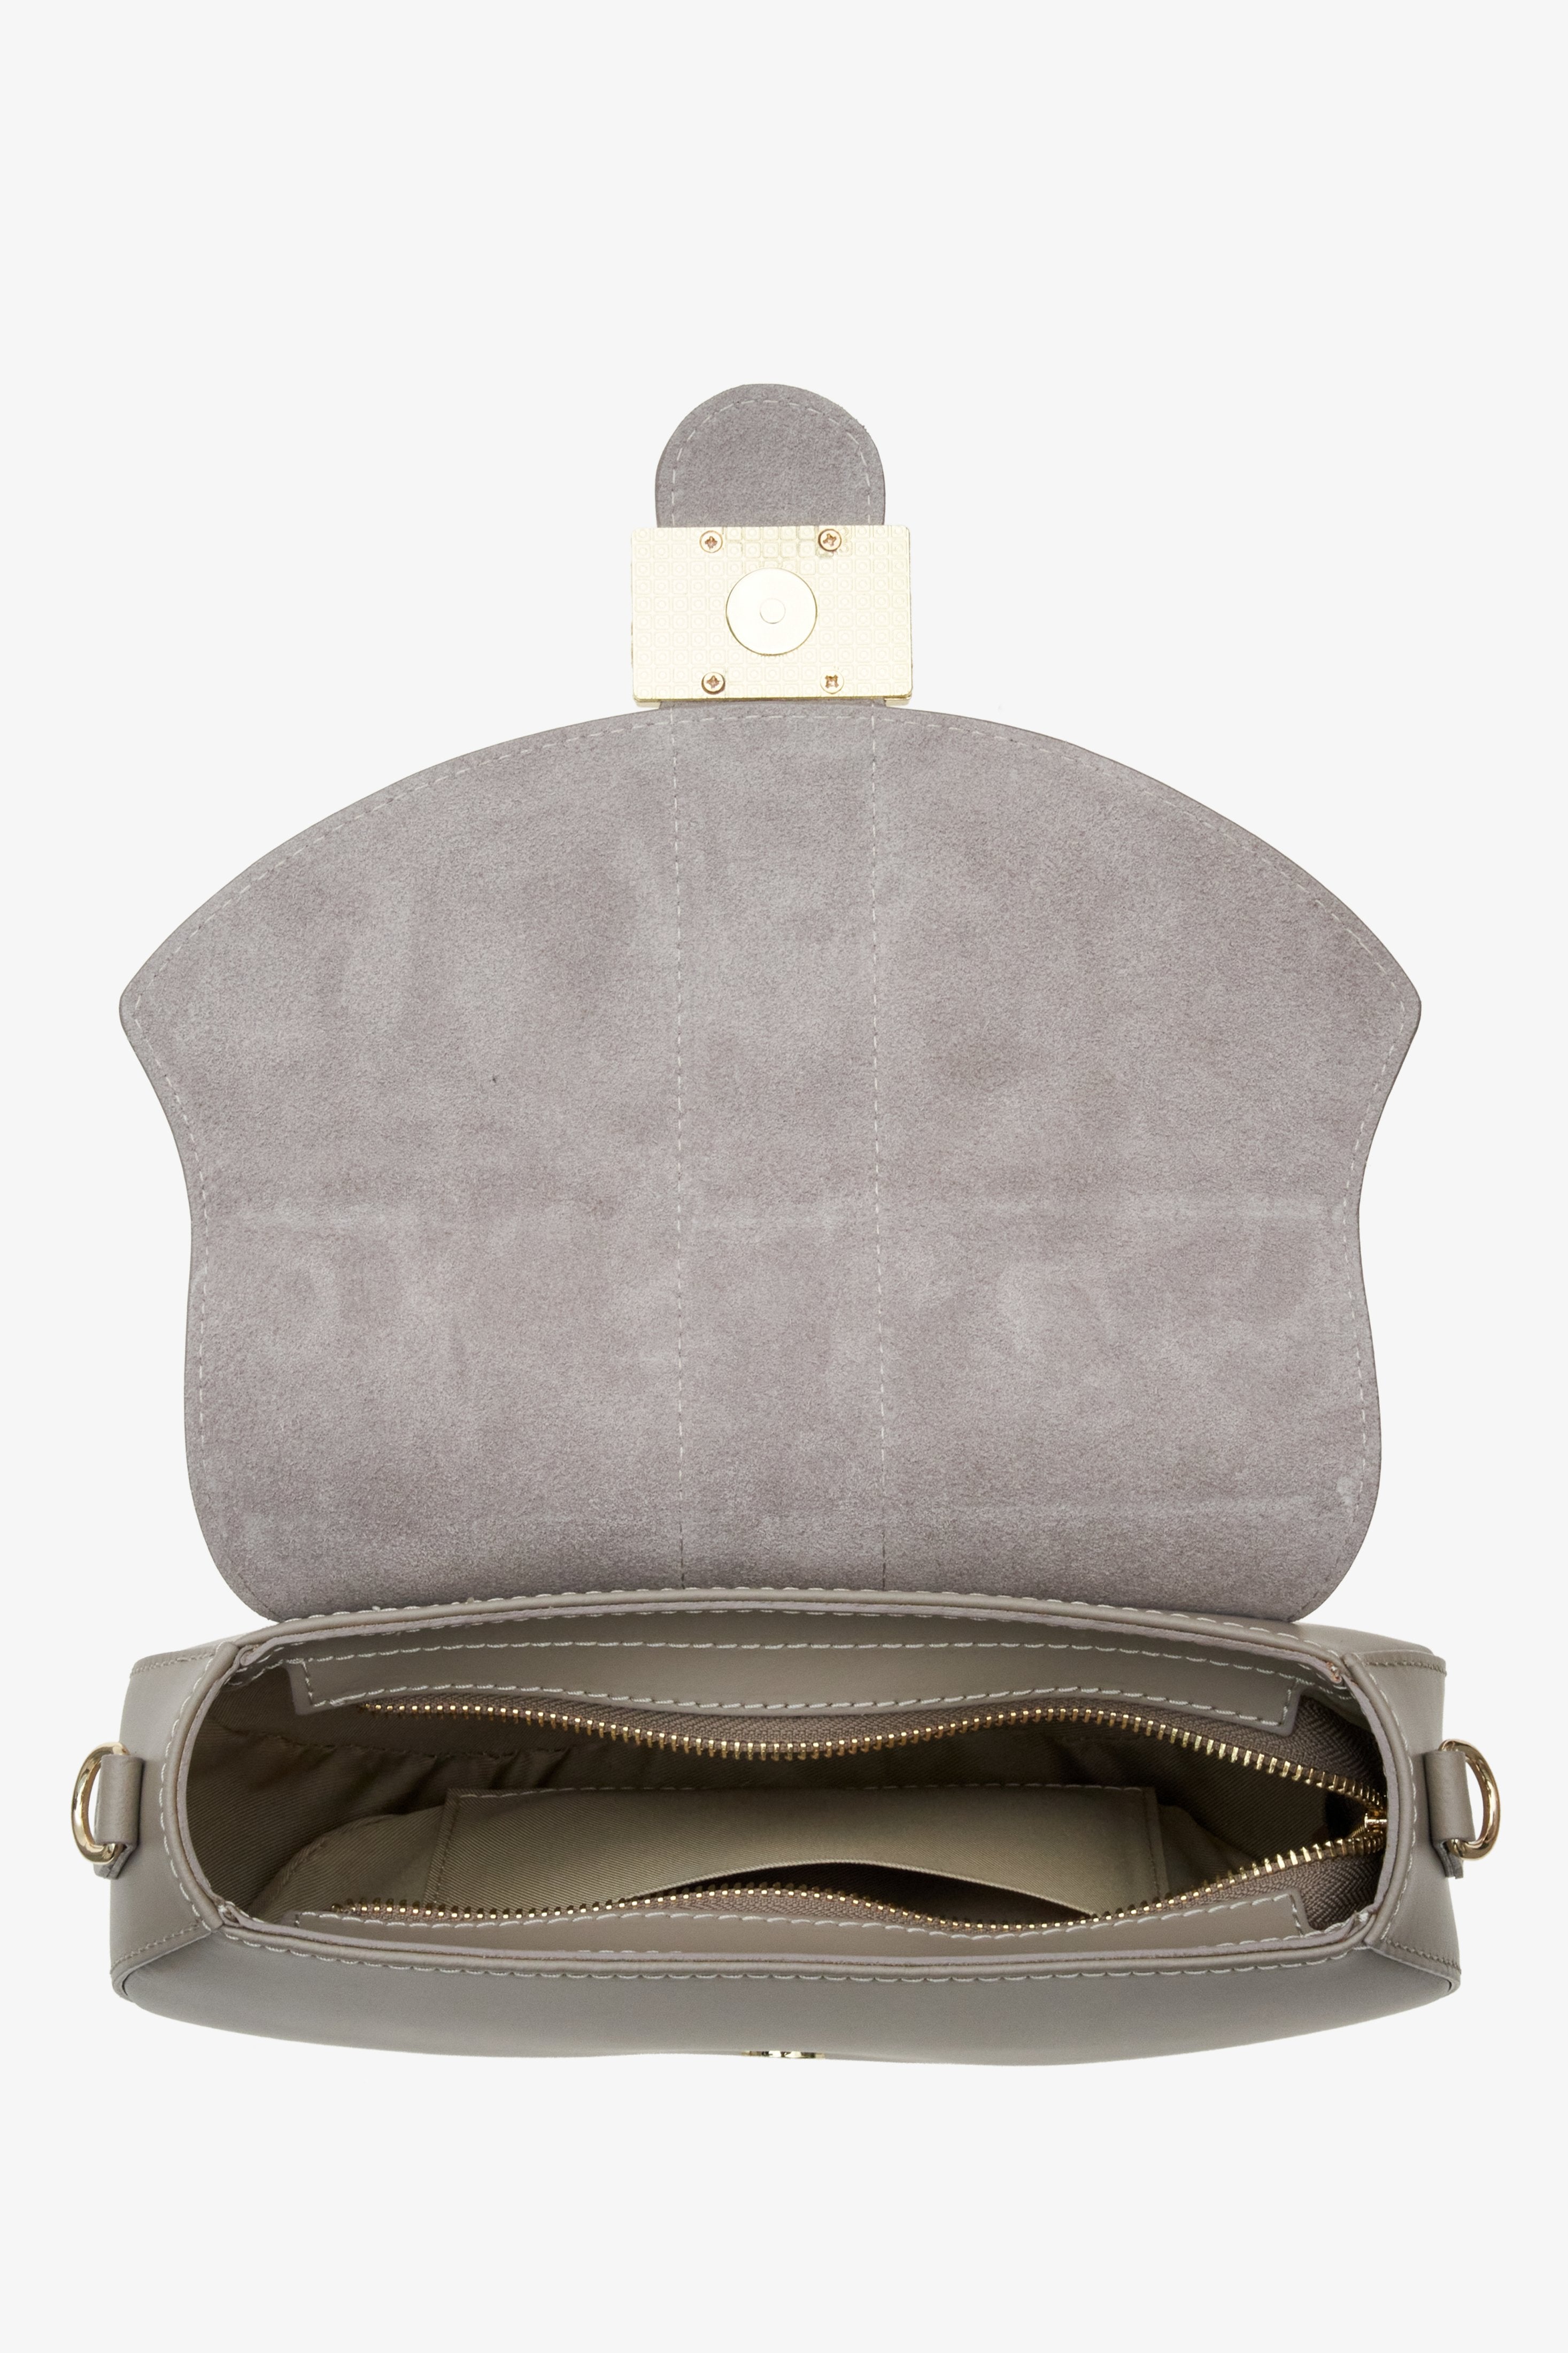 Damska torebka w kształcie podkowy w kolorze szarym Estro - wnętrze modelu.